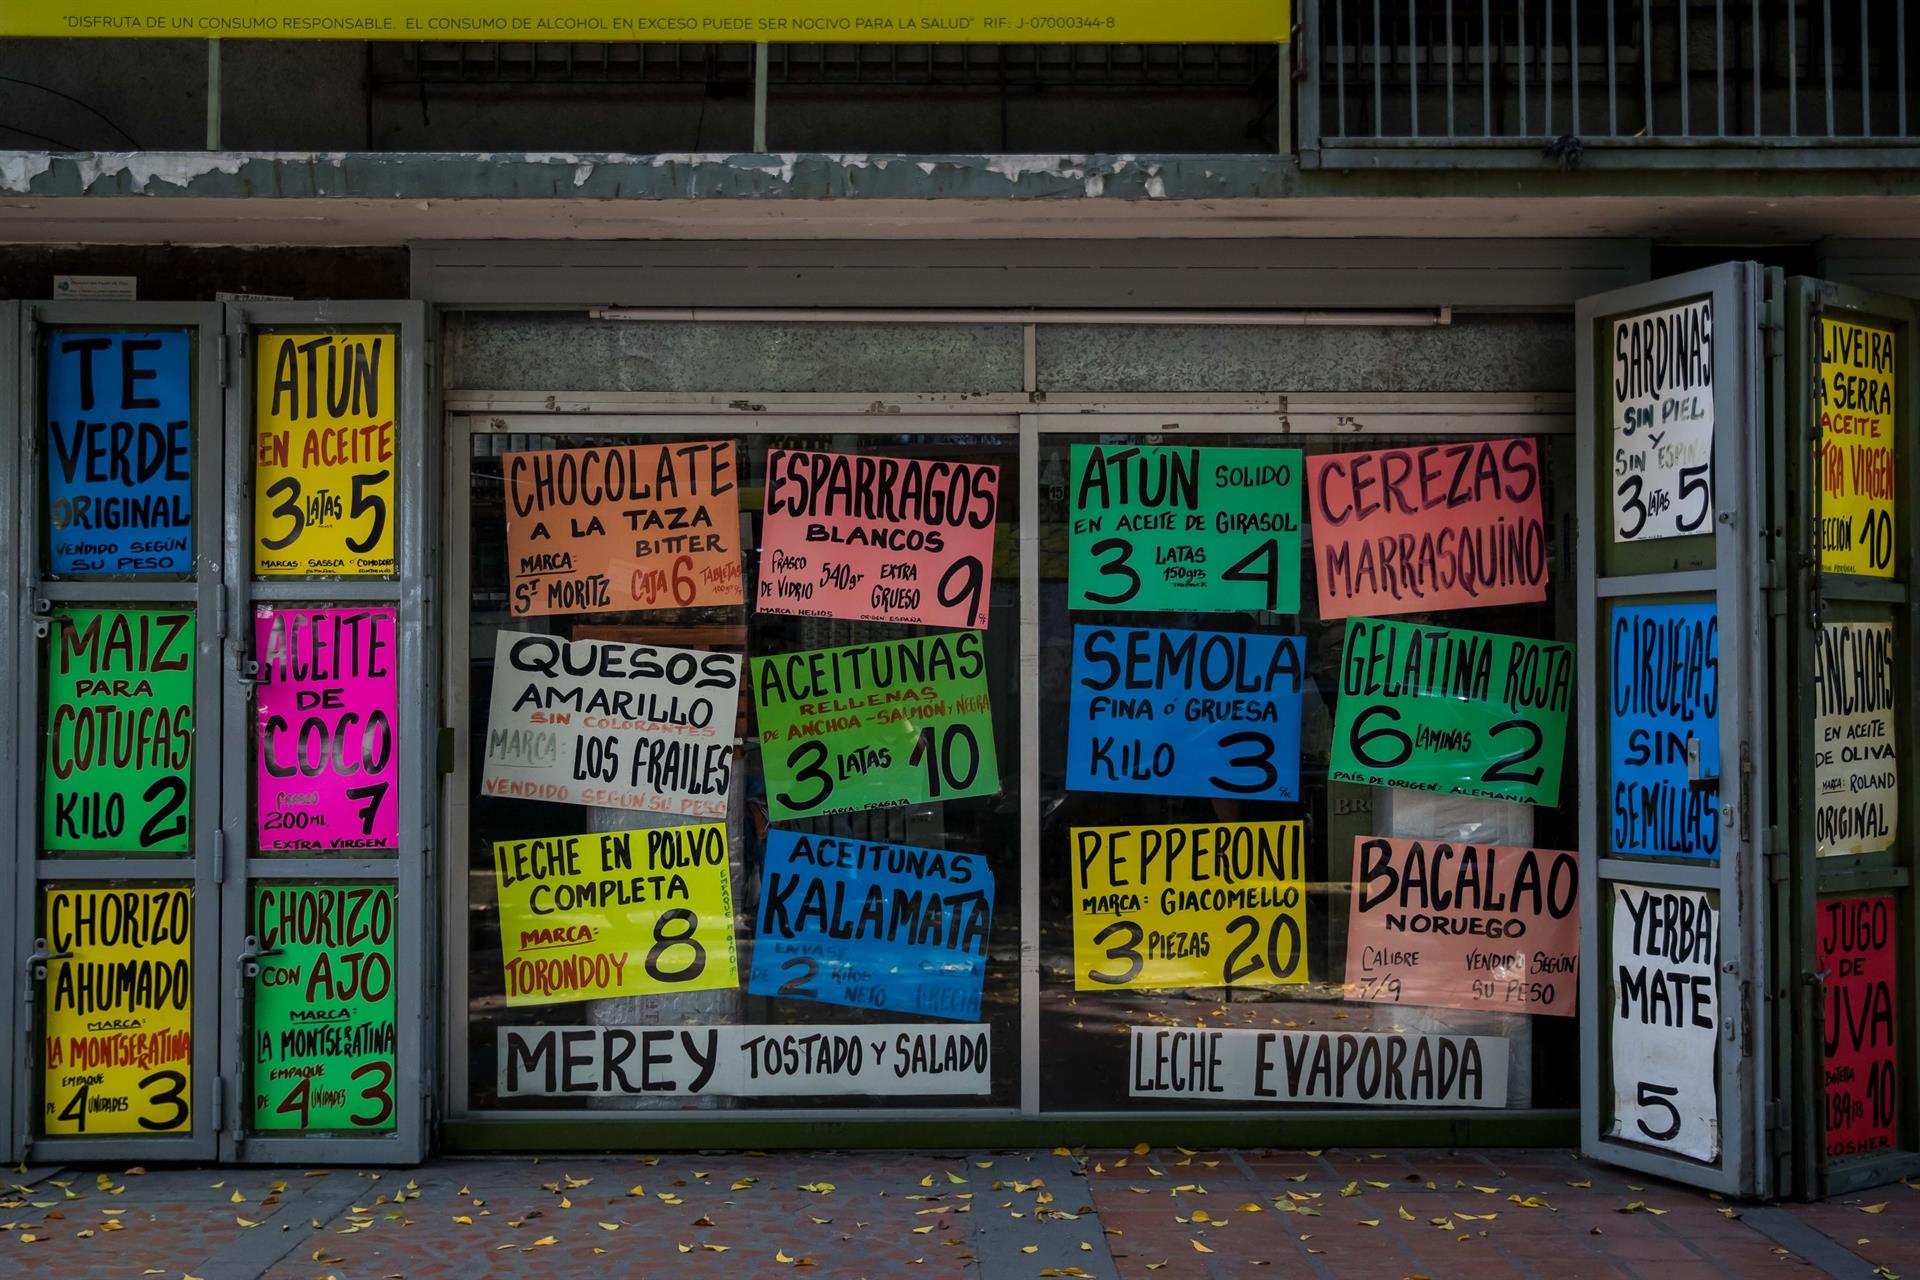 “Todo está muy costoso”: la inflación no da respiro a los venezolanos